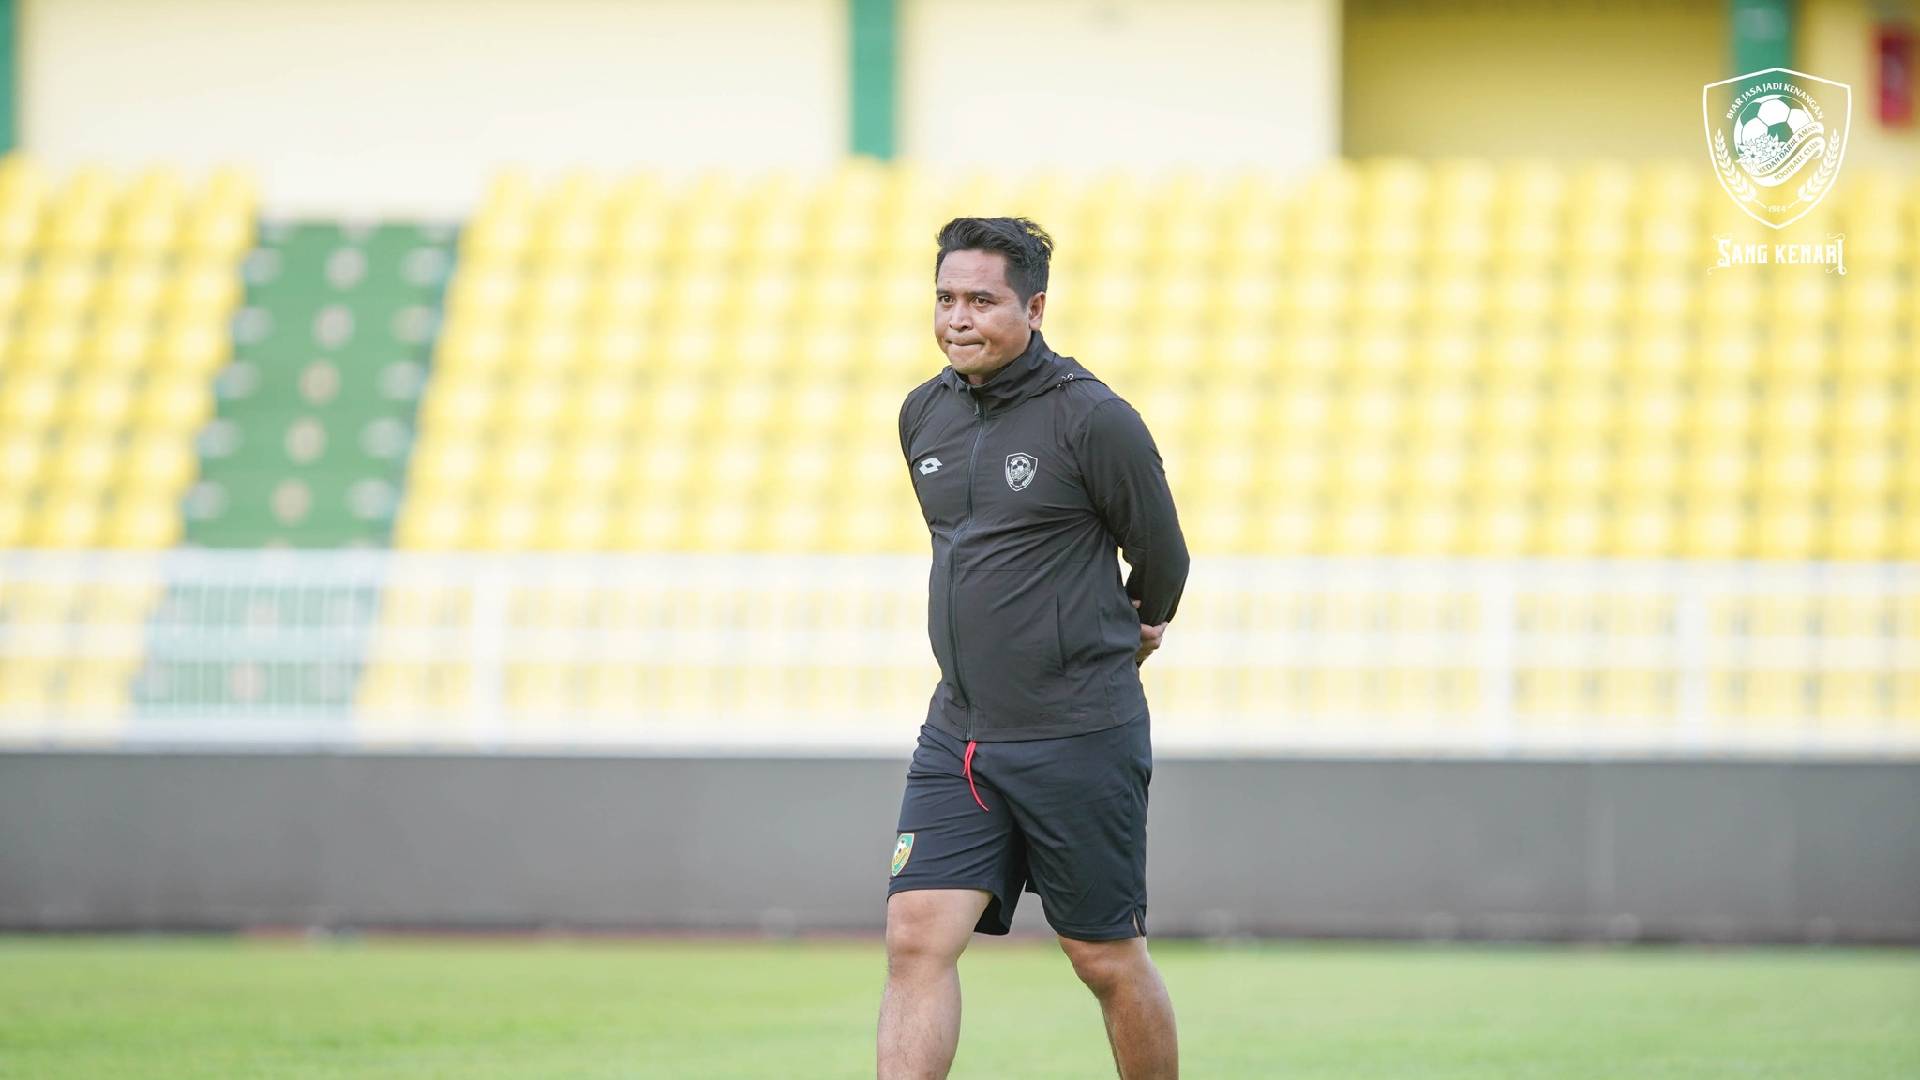 Nafuzi Zain Kedah Darul Aman FC 3 3 Pemain Berprofil Tinggi Jadi Buruan Nafuzi Zain